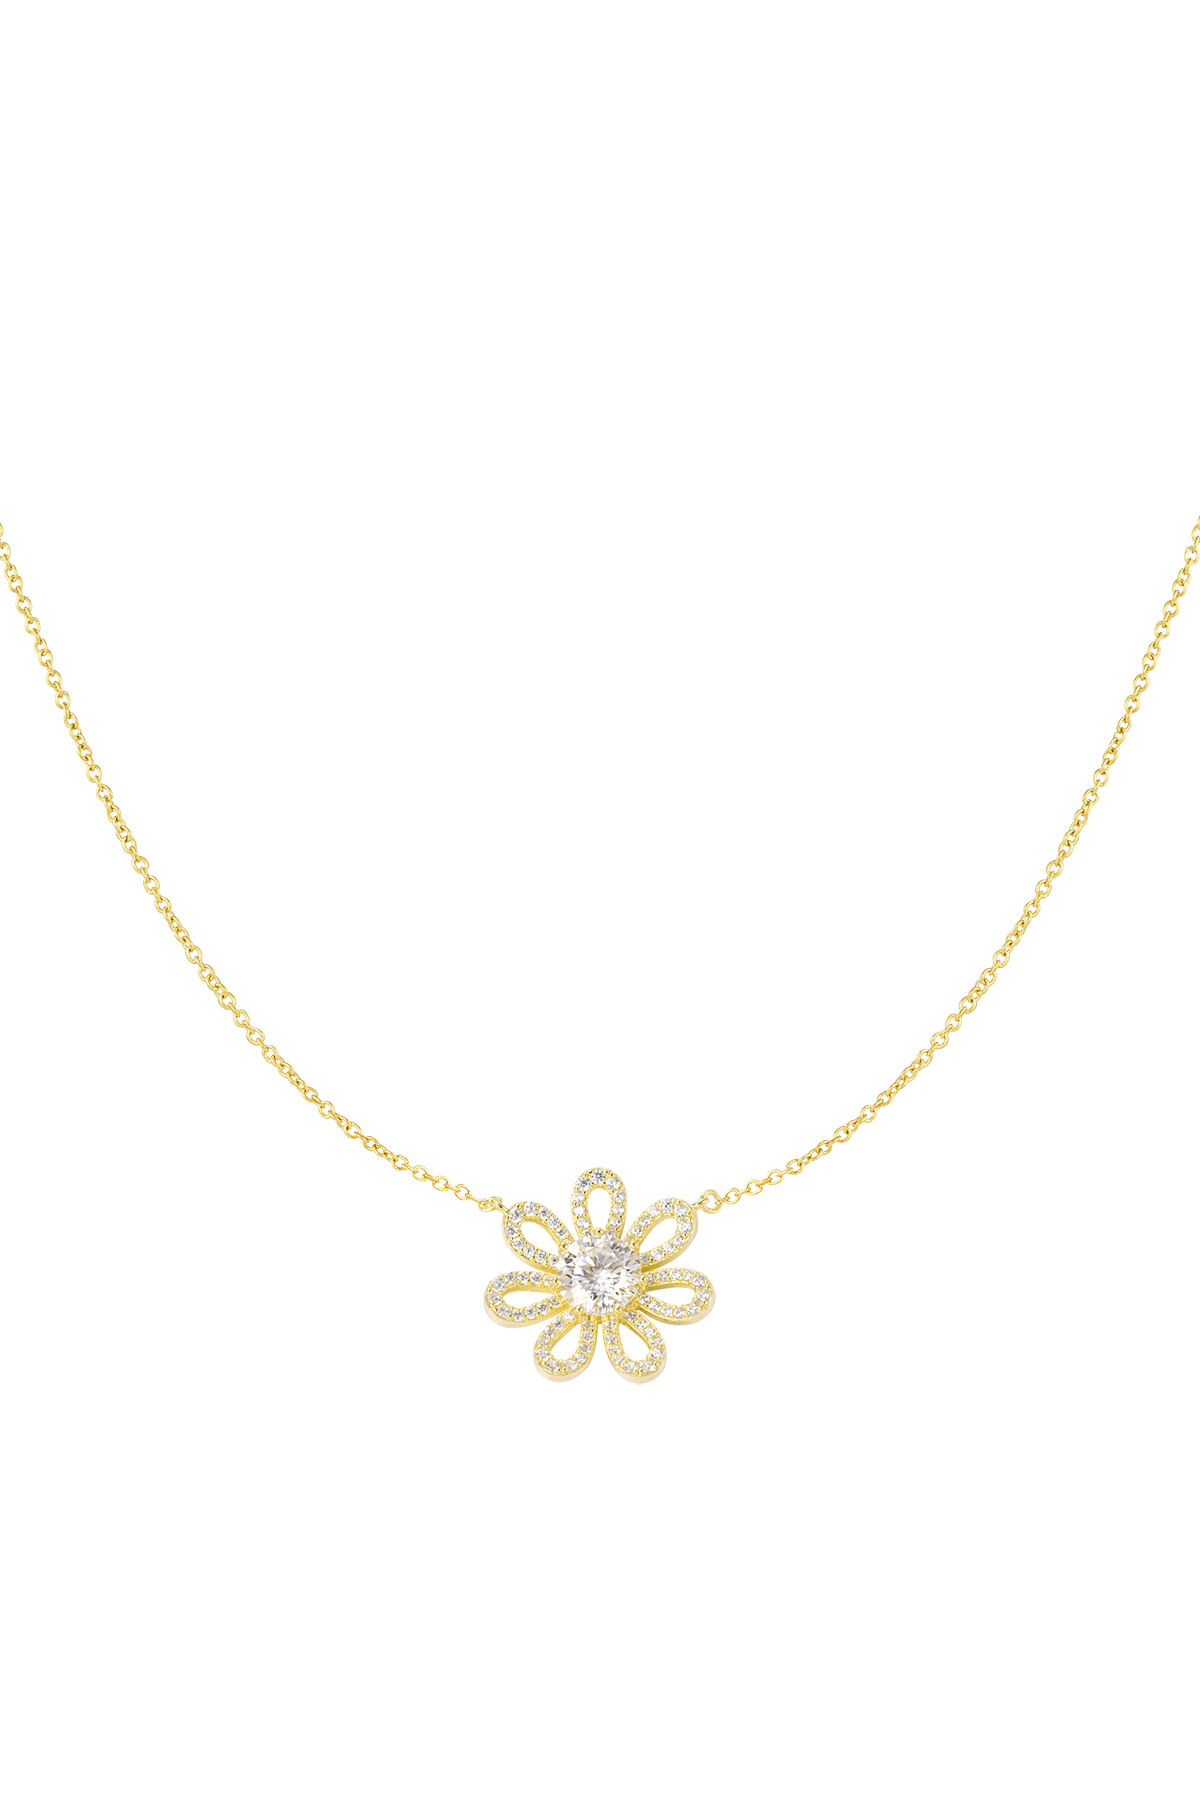 Halskette Strass Blume - Gold 